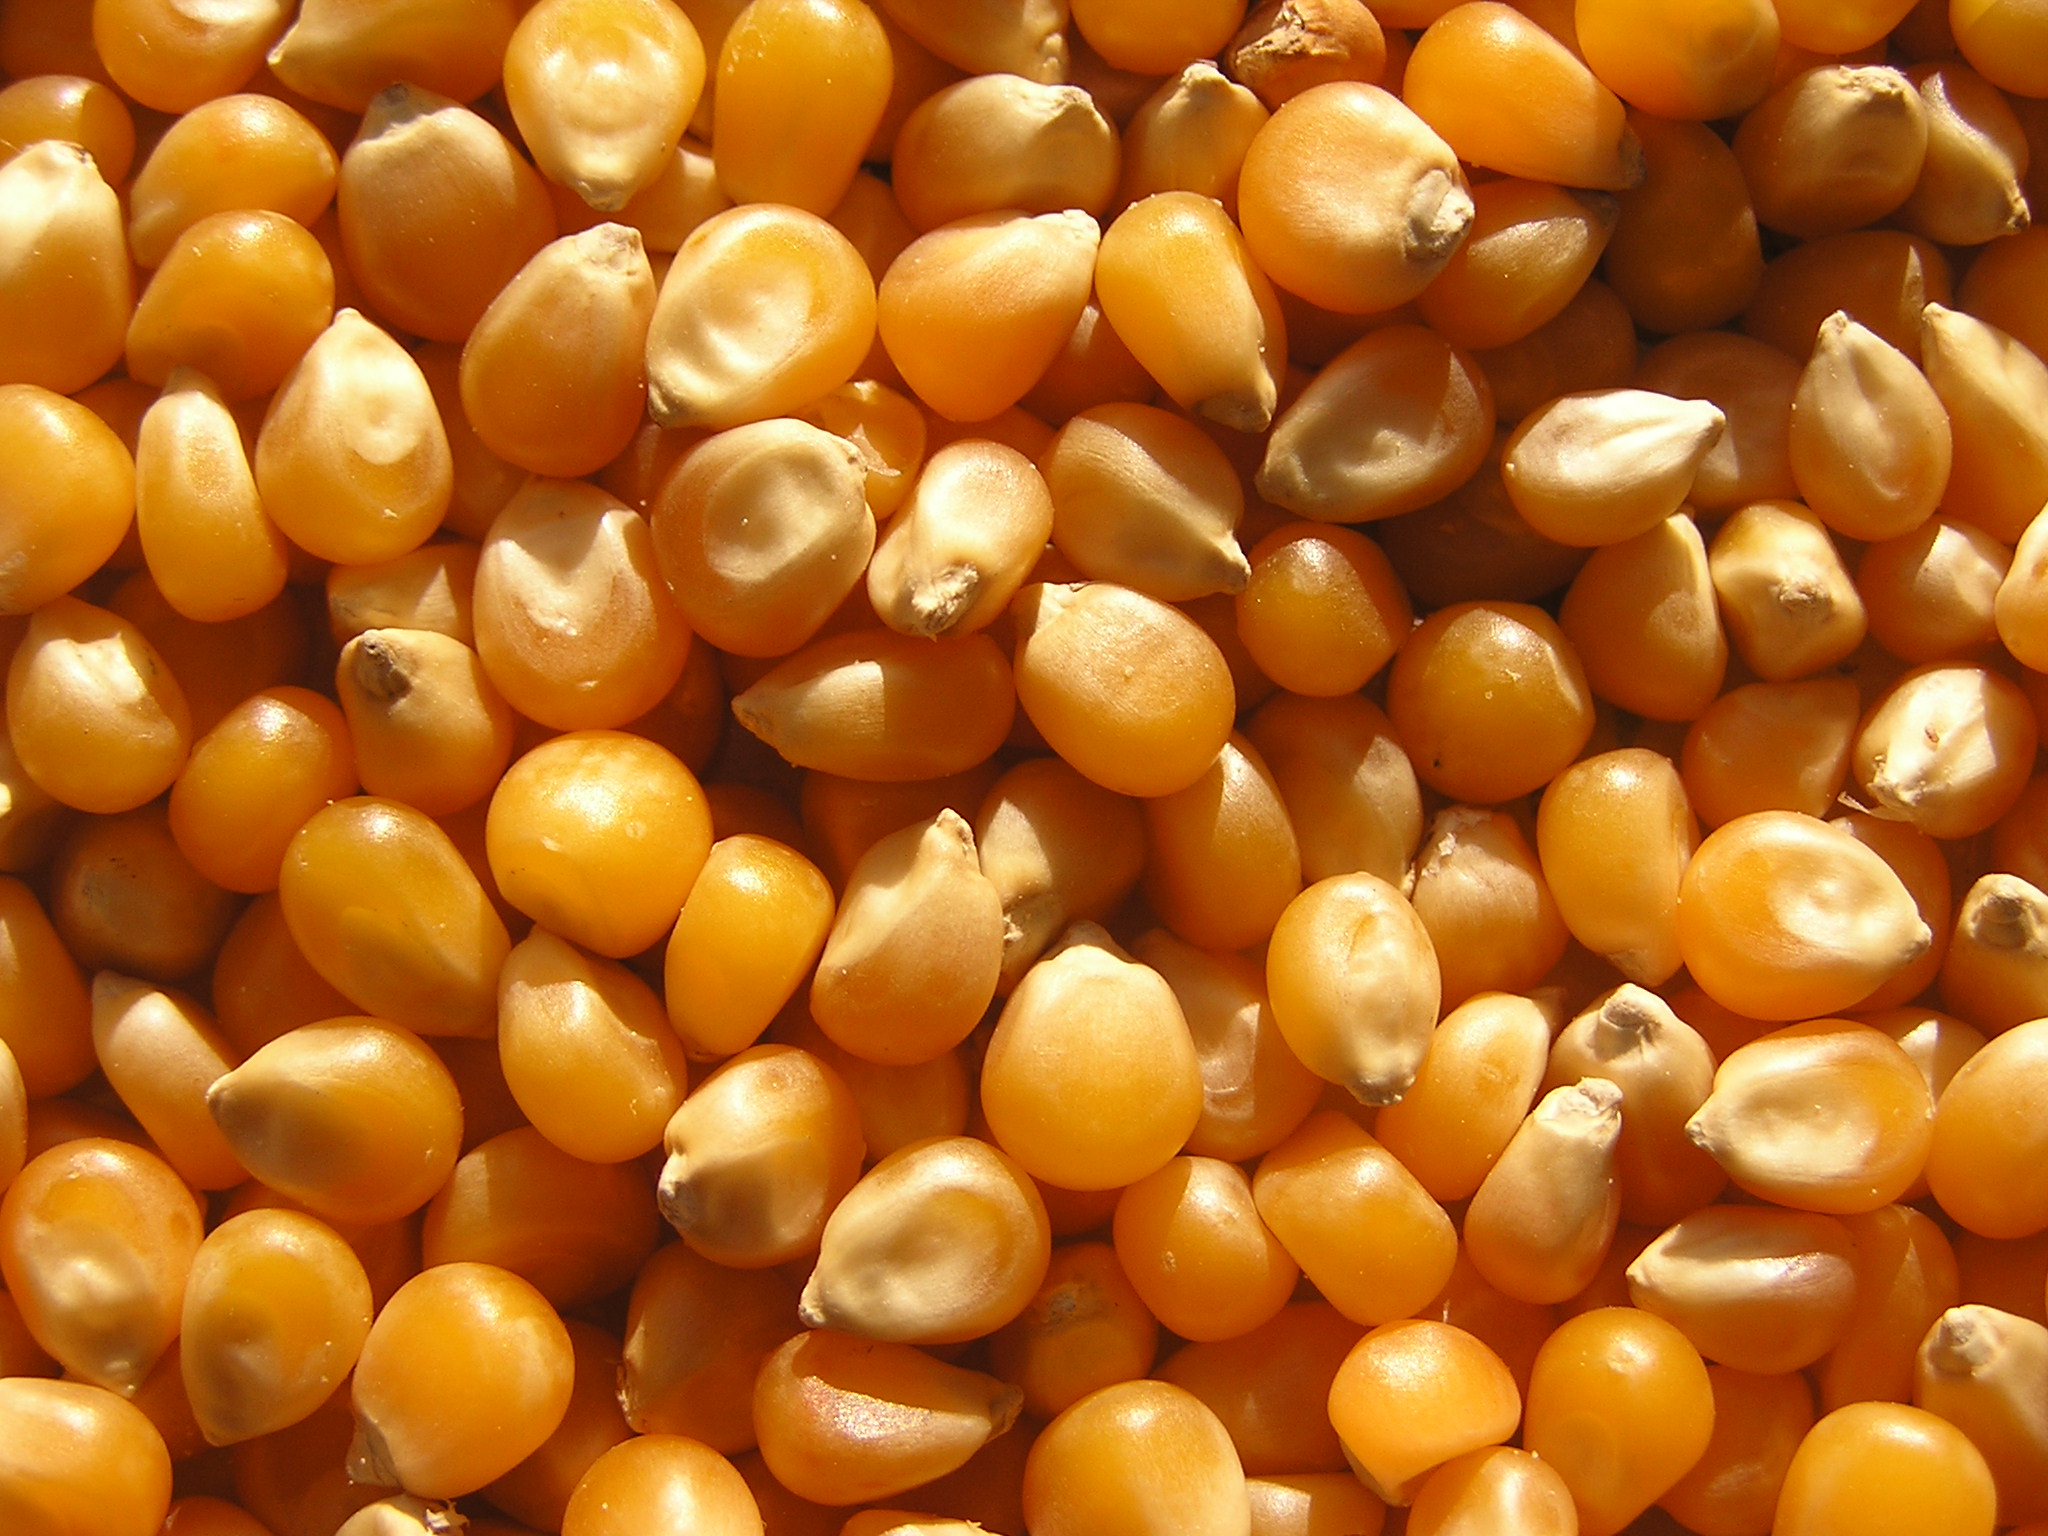 Зёрна кукурузы для попкорна, выращены в Венгрии, производитель УНО ФРЕСКО ТРАДЕКС.